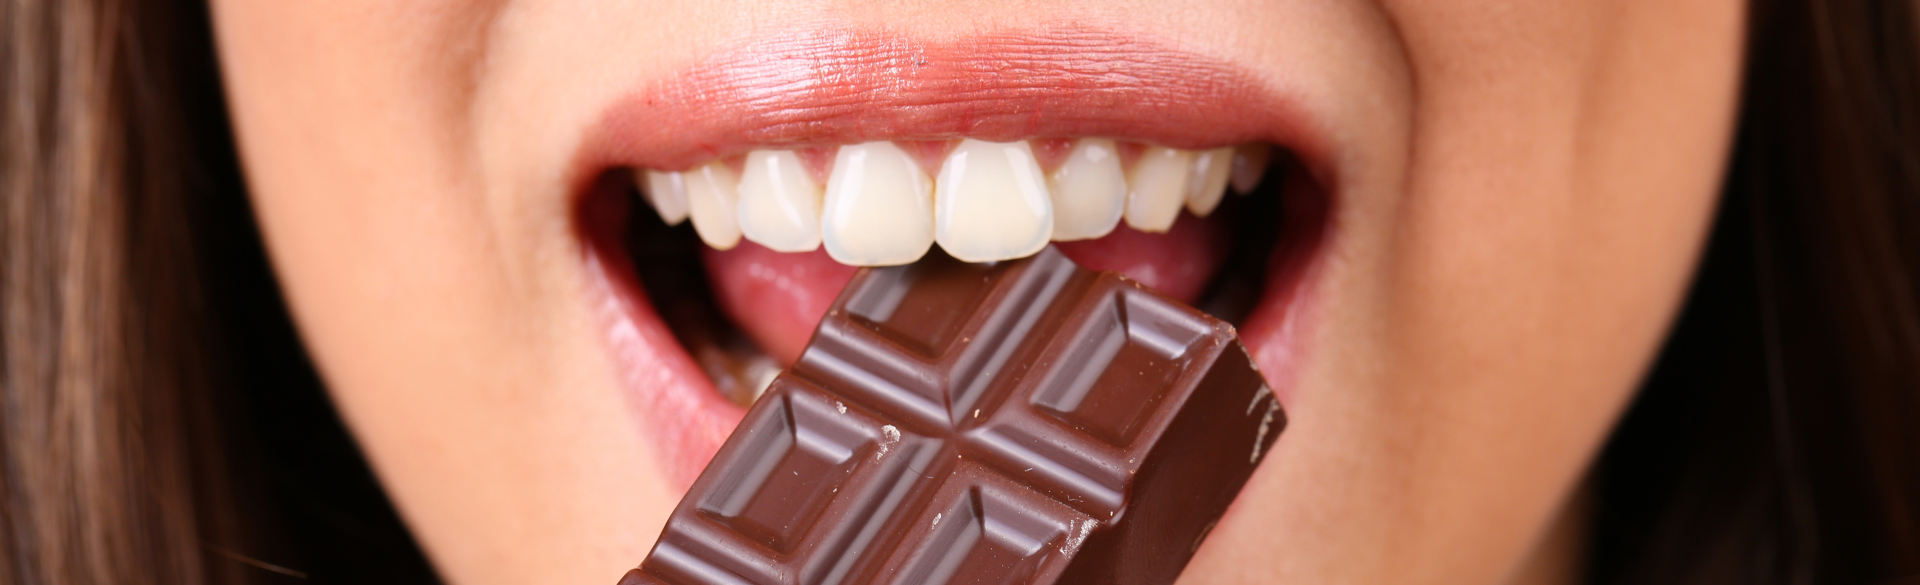 woman with nice teeth biting chocolate bar 